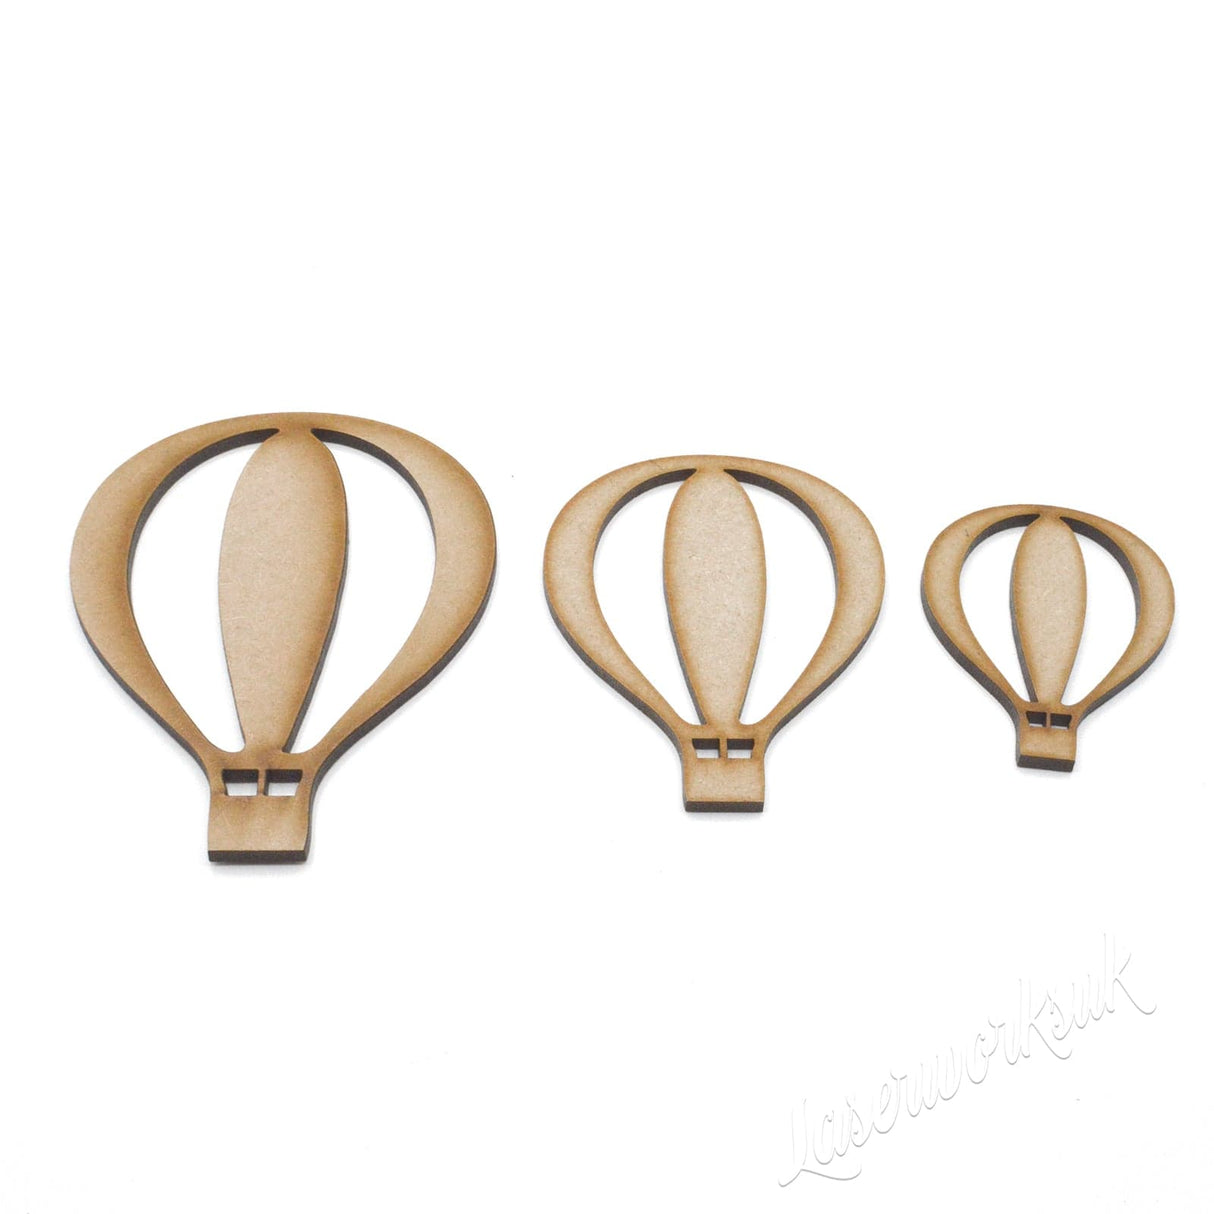 Hot Air Balloon - Wooden Craft Shapes - Laserworksuk